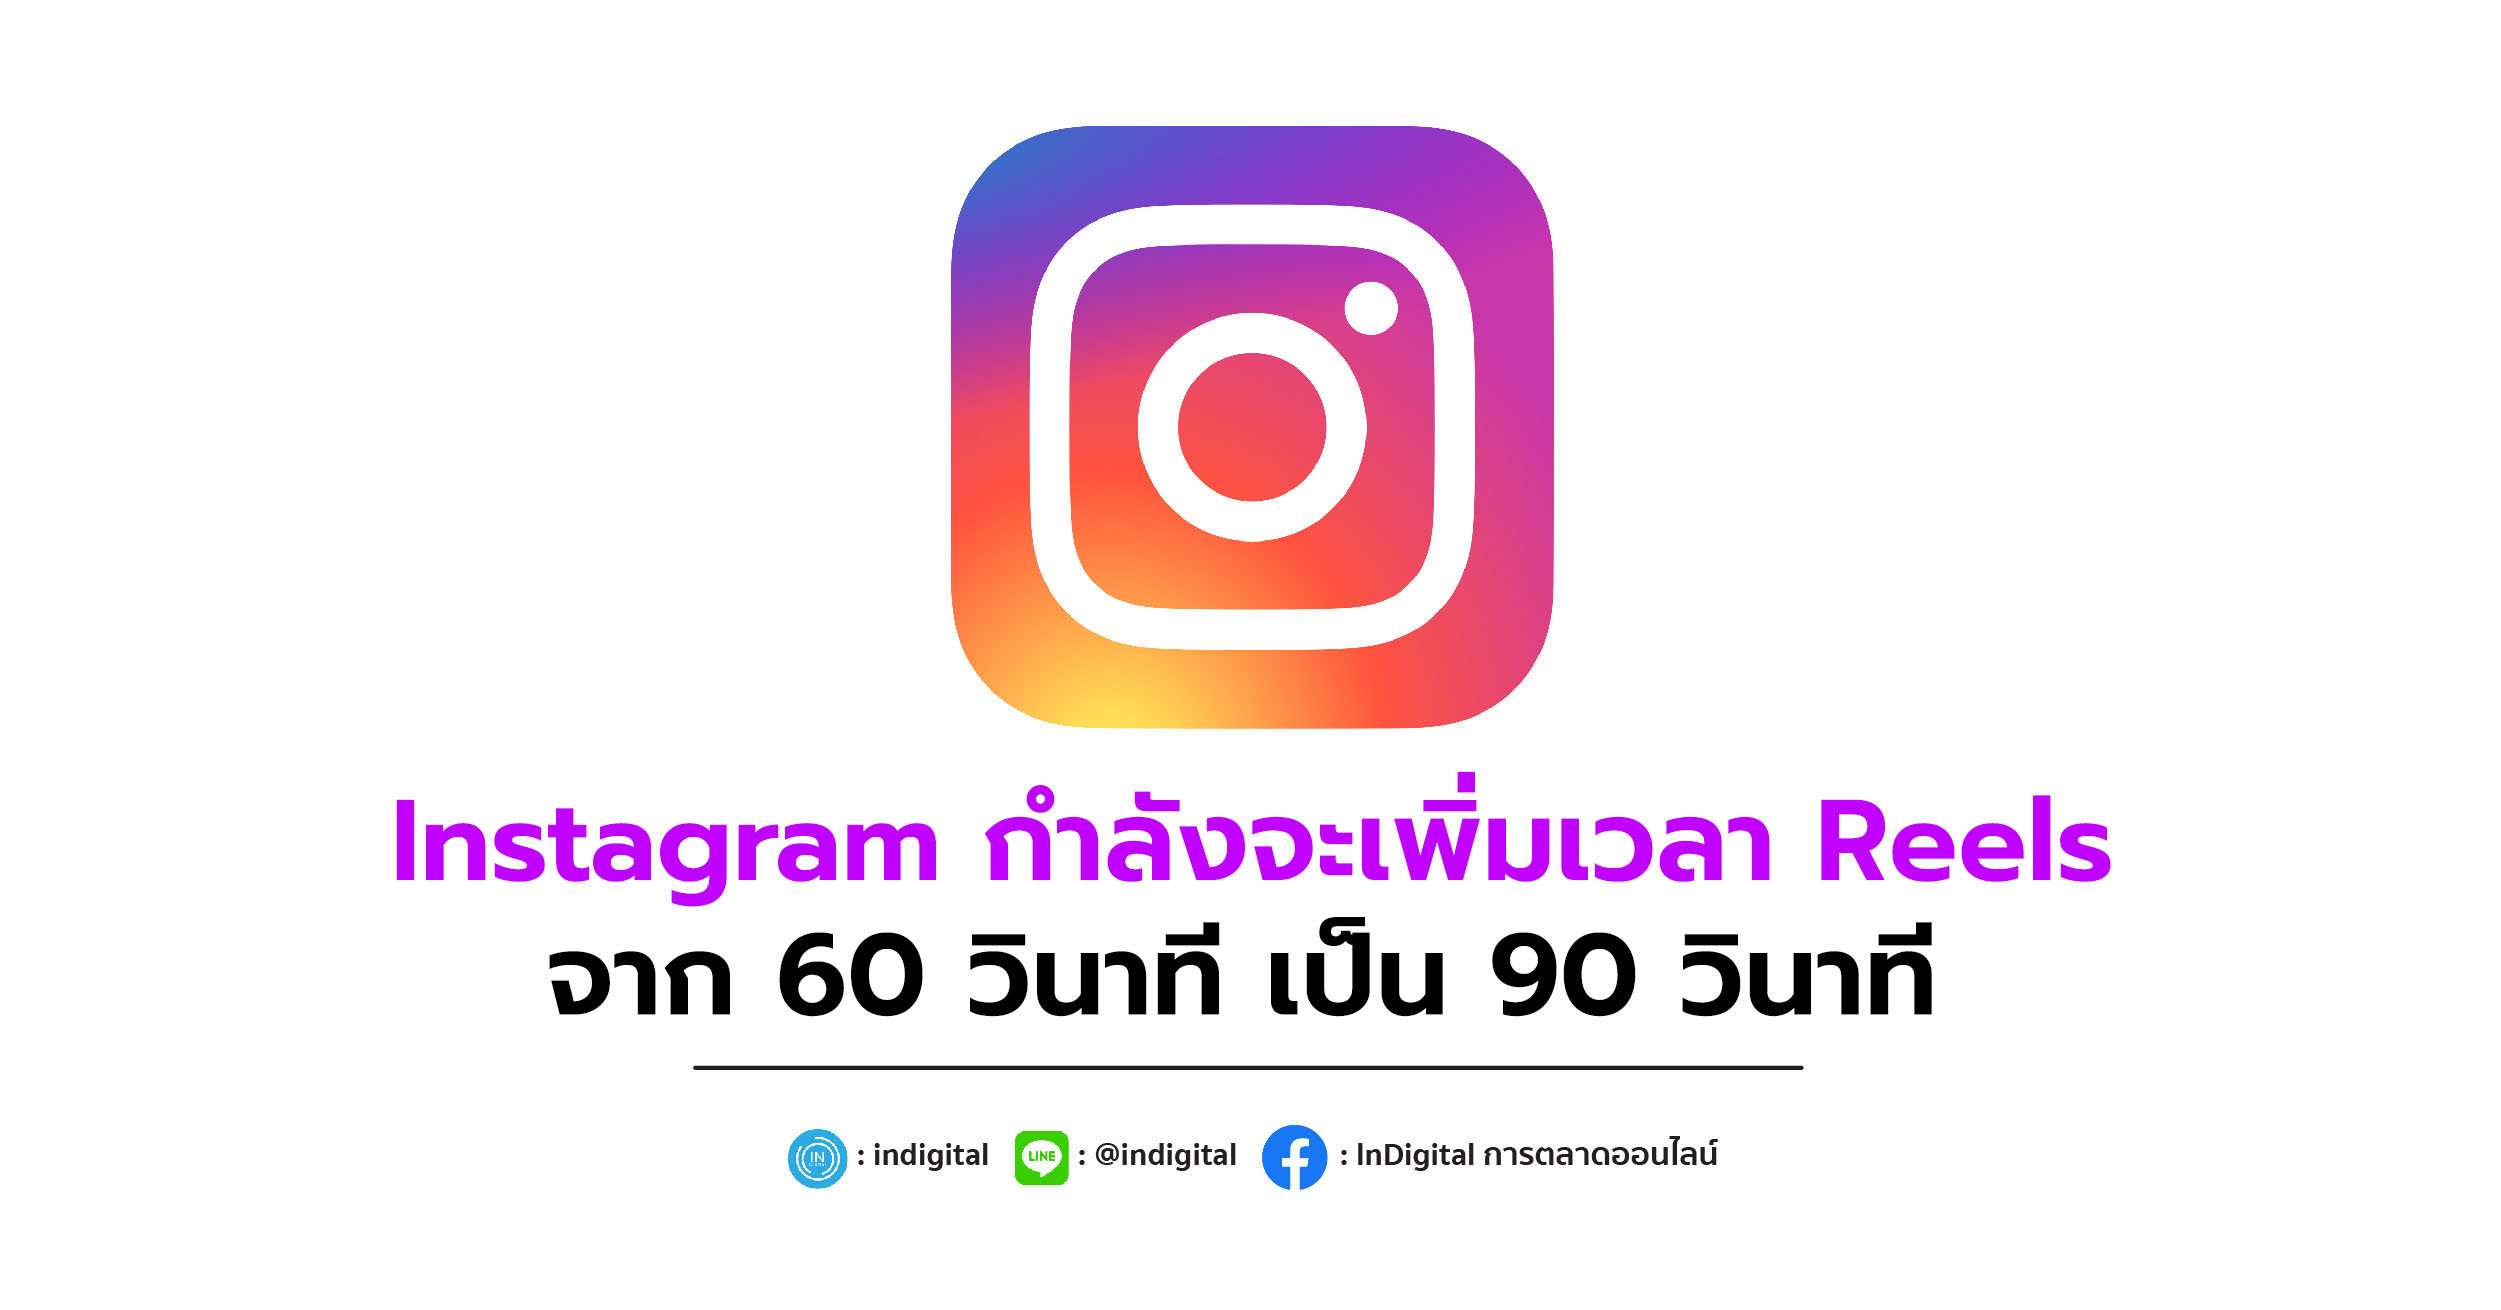 Instagram กำลังจะเพิ่มเวลา Reels จาก 60 วินาที เป็น 90 วินาที